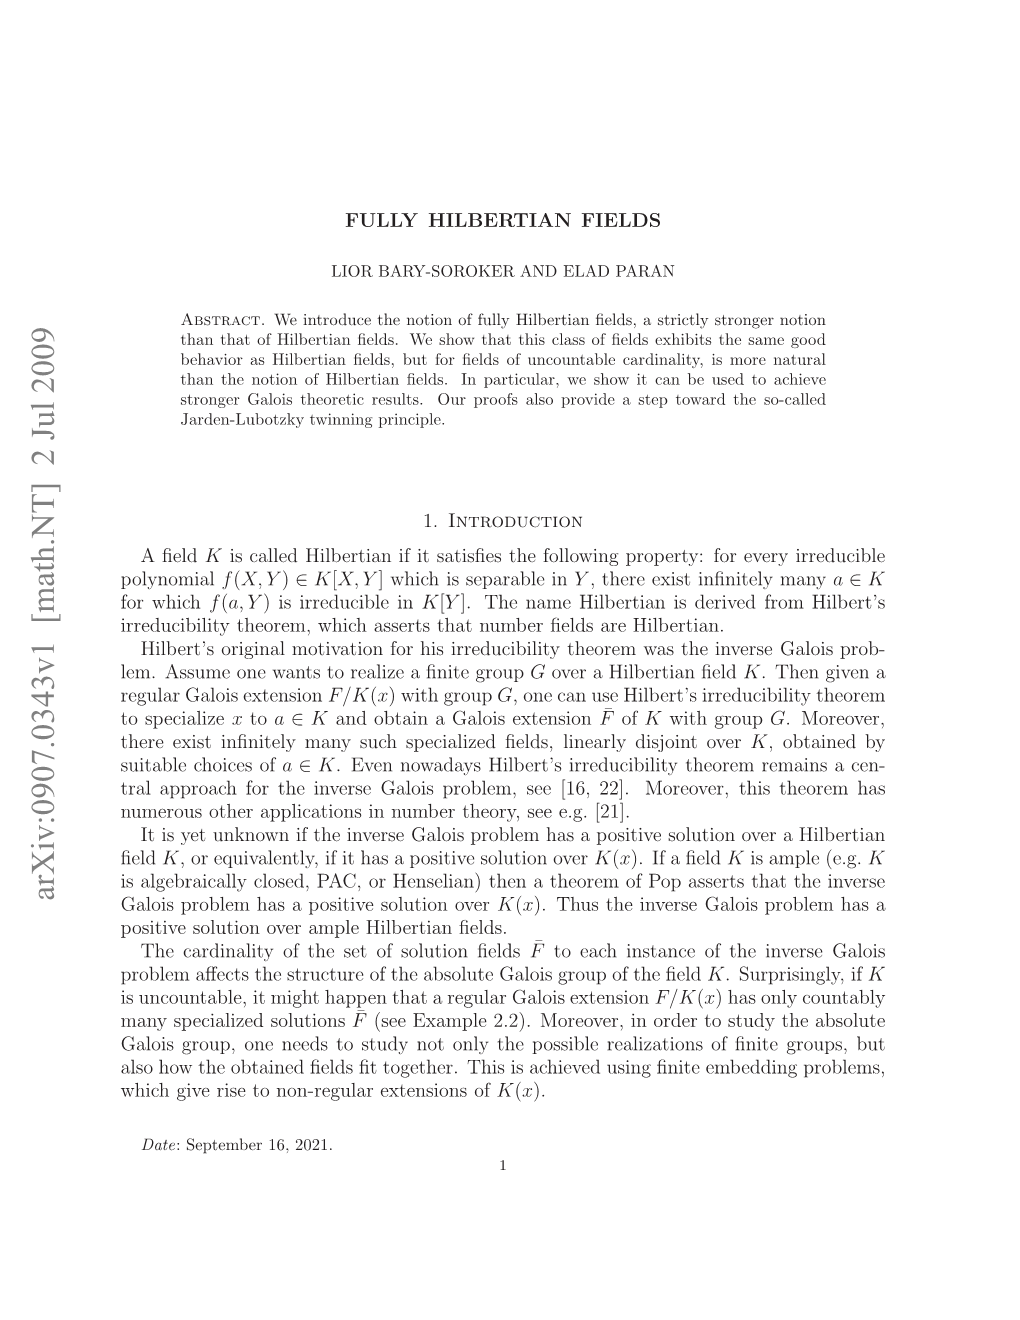 Fully Hilbertian Fields 3